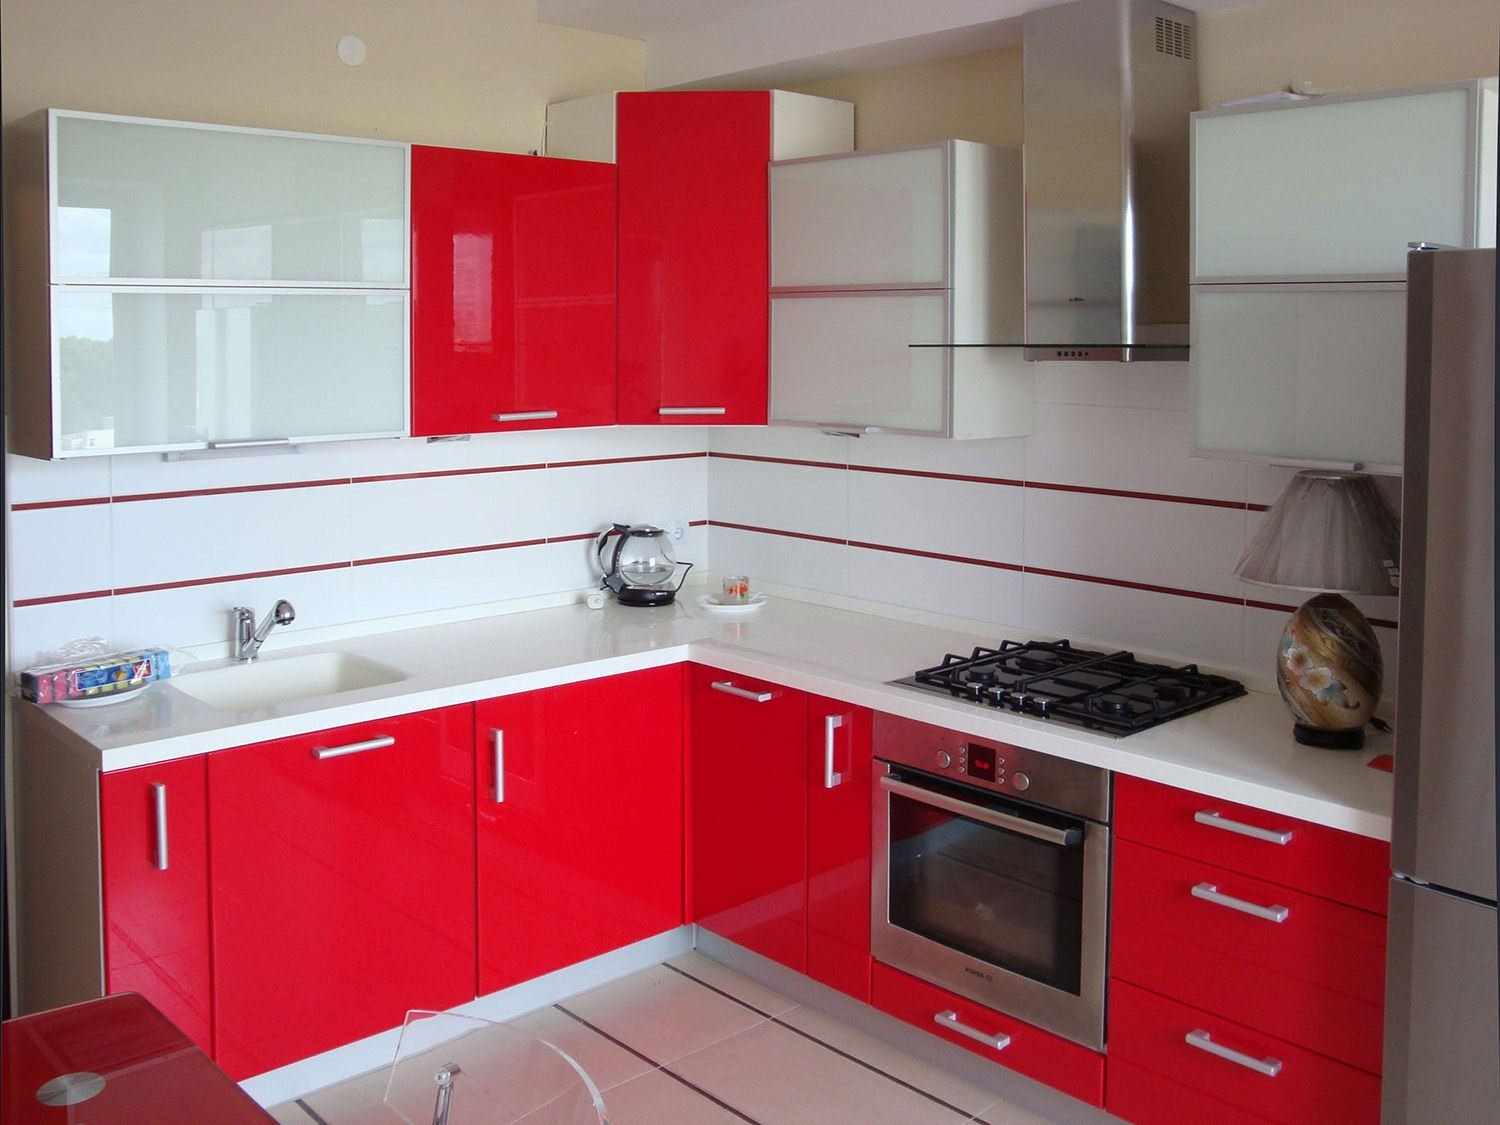 et eksempel på en lys rød køkken design